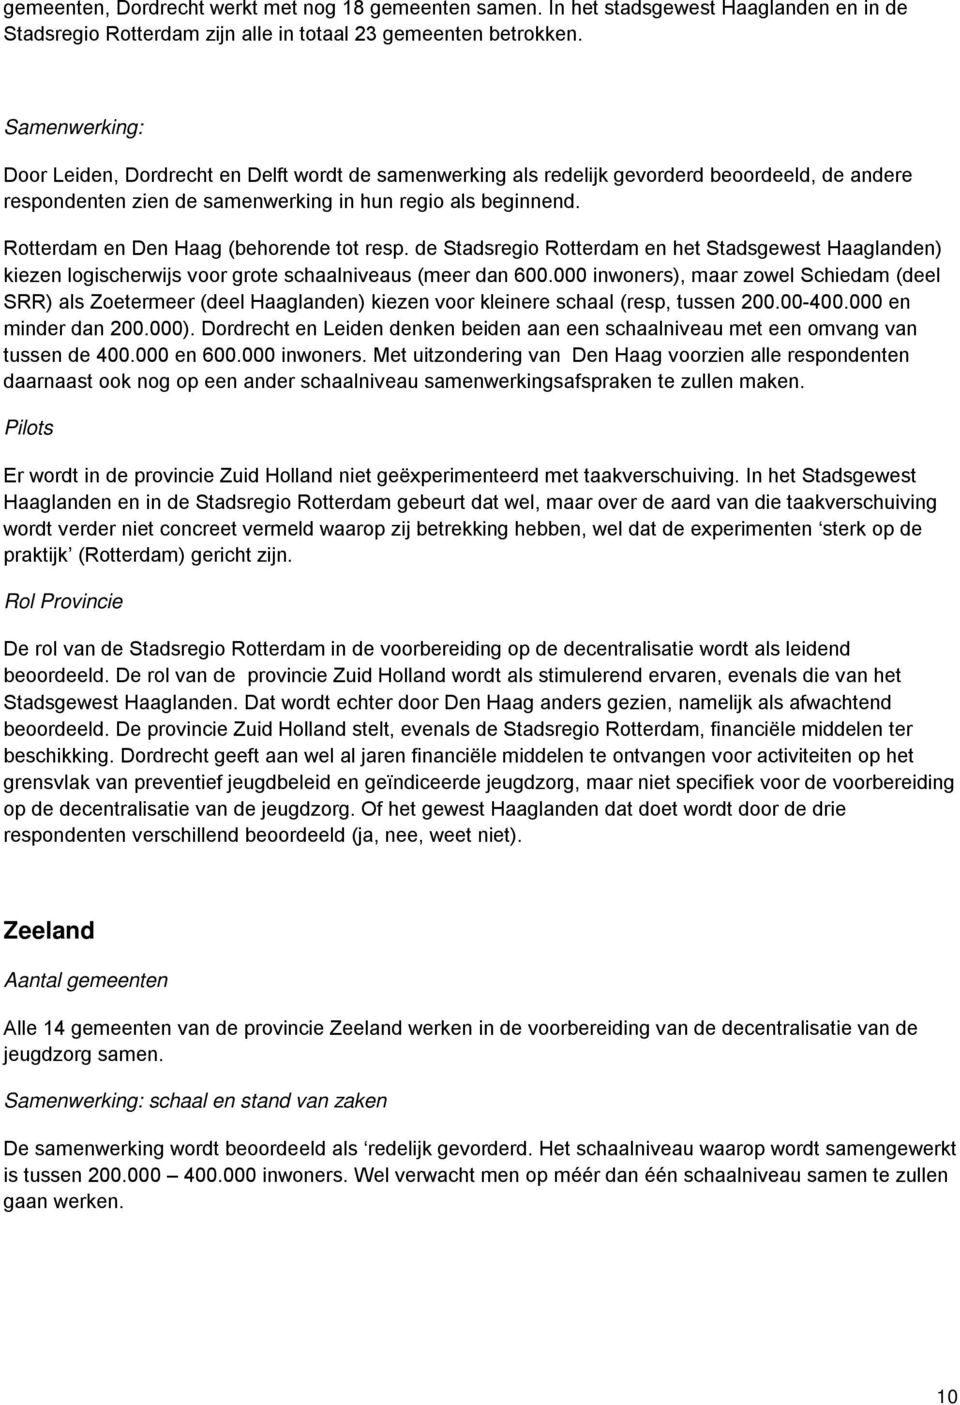 Rotterdam en Den Haag (behorende tot resp. de Stadsregio Rotterdam en het Stadsgewest Haaglanden) kiezen logischerwijs voor grote schaalniveaus (meer dan 600.